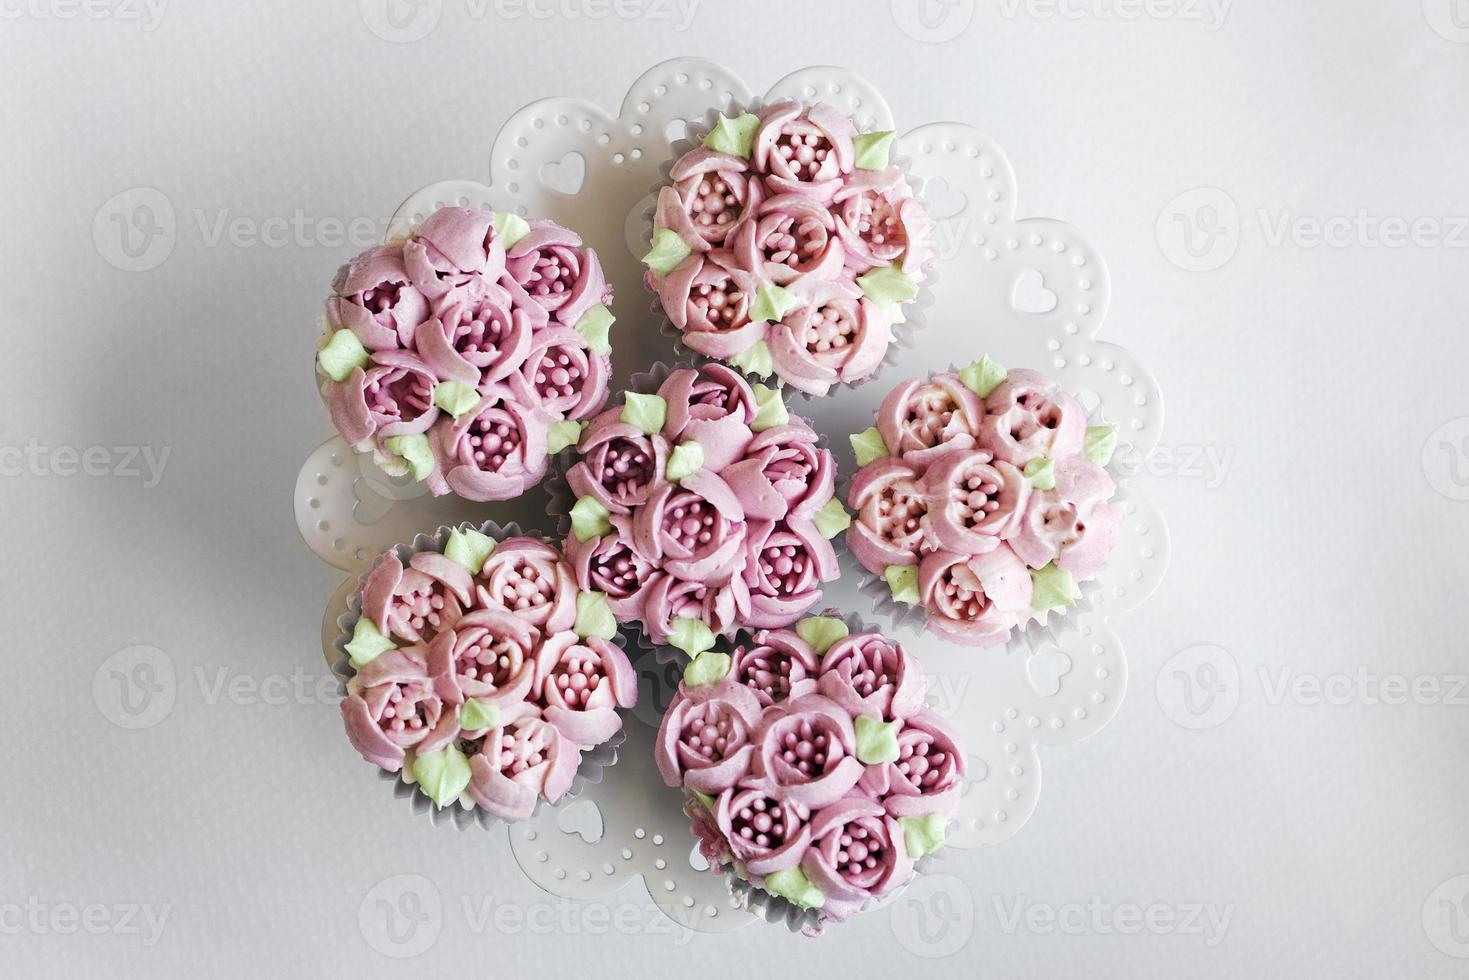 cupcakes décorés de fleurs roses gastronomiques sur table photo